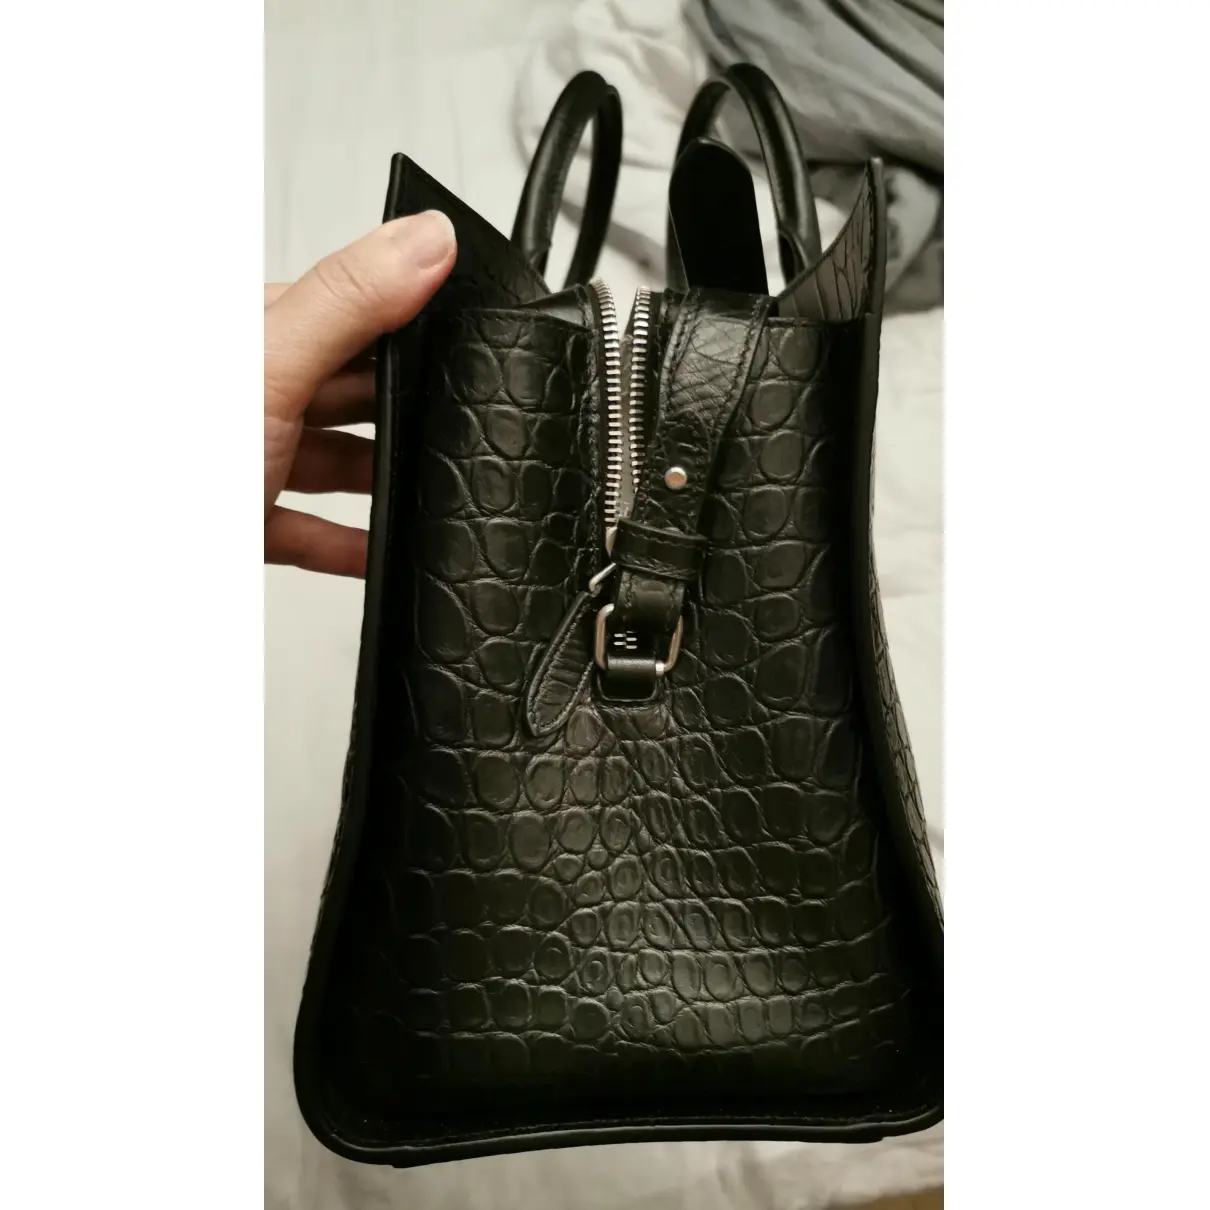 Jane leather handbag Saint Laurent